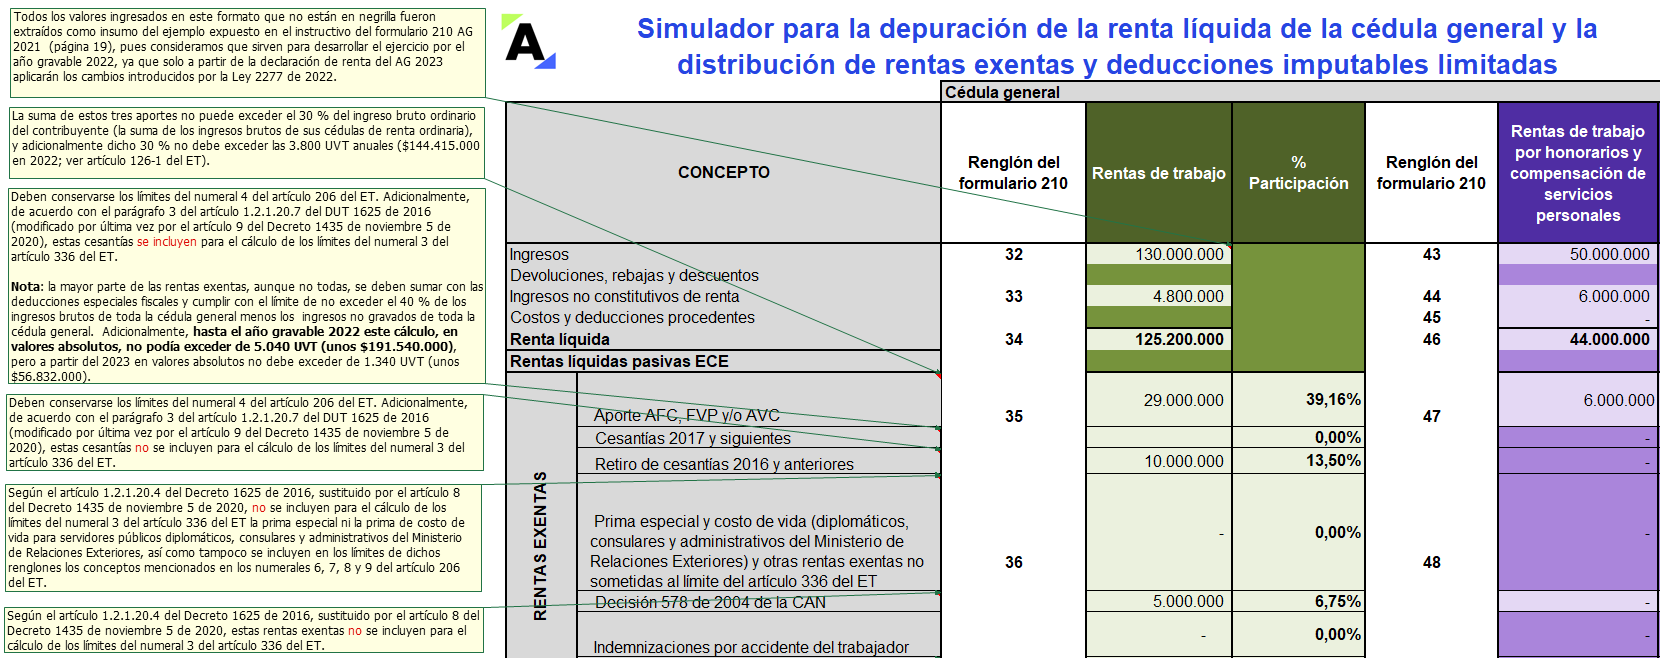 Simulador: cálculo de la distribución de rentas exentas y deducciones limitadas